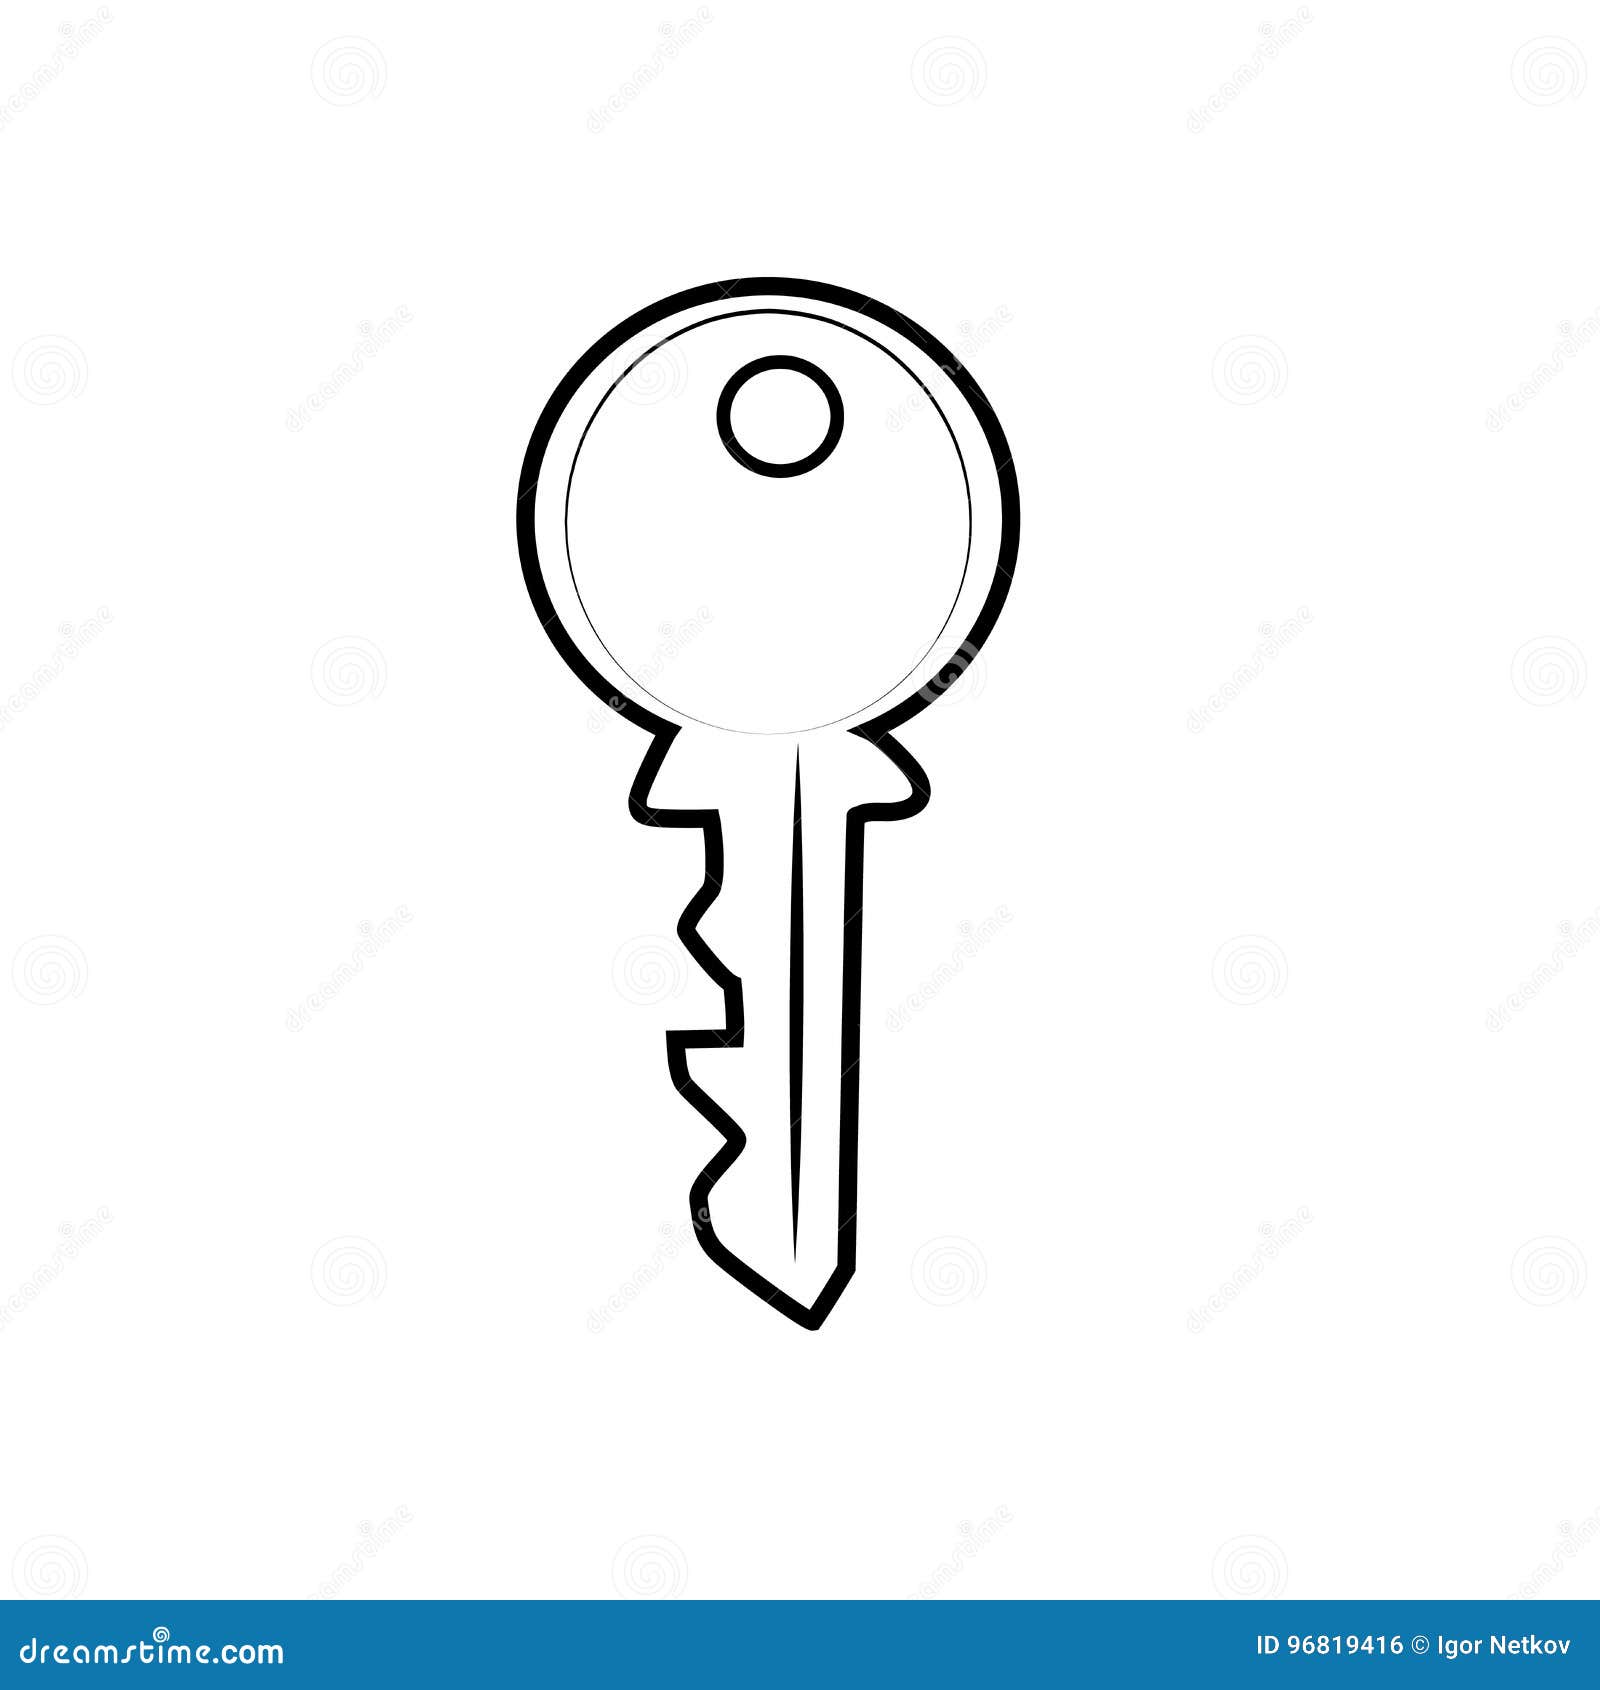 Hand sketch key Royalty Free Vector Image - VectorStock